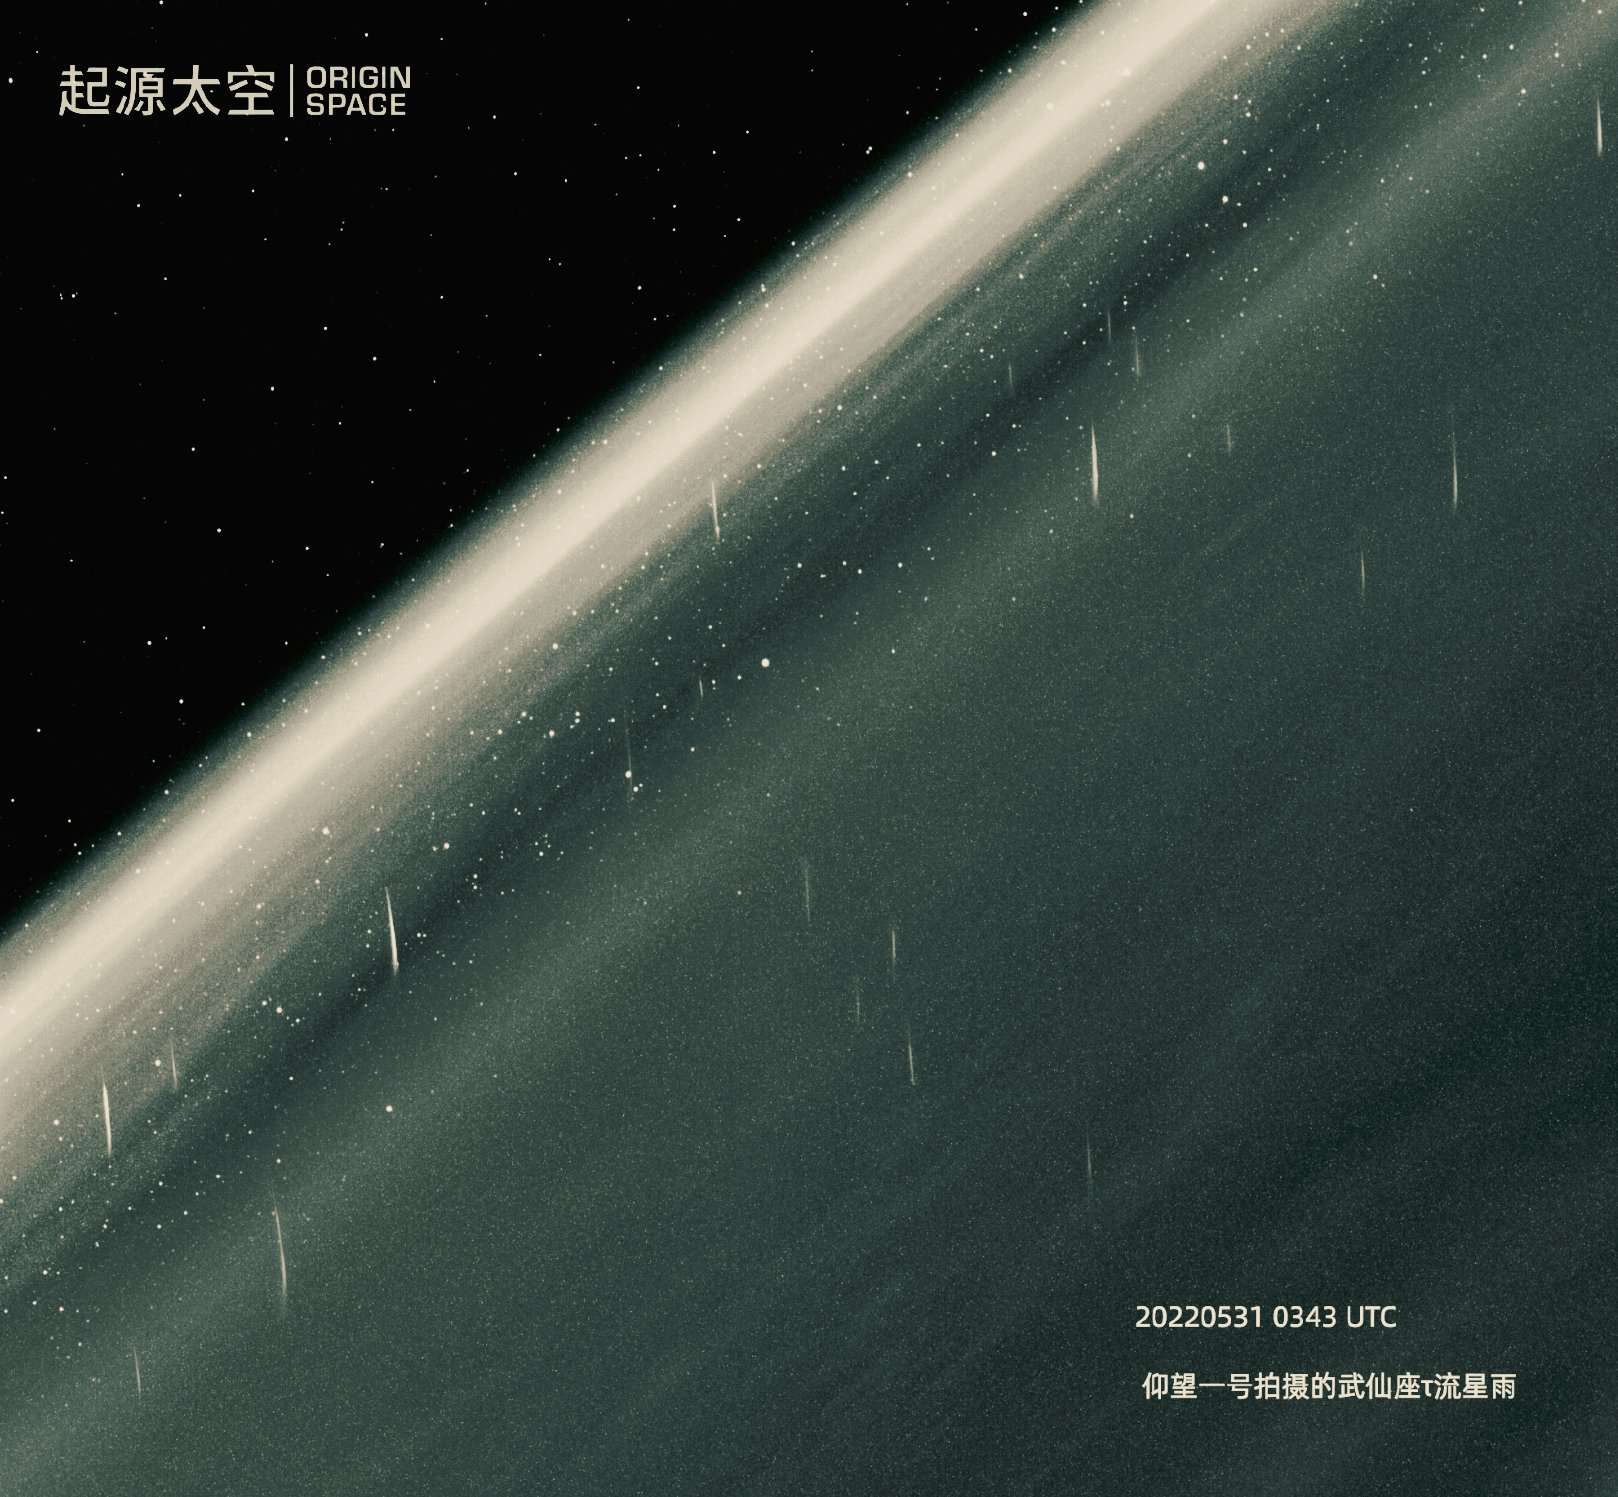 Magnifique image capturée par le télescope spatial chinois Yangwang-1 d'Origin Space. © Origin Space